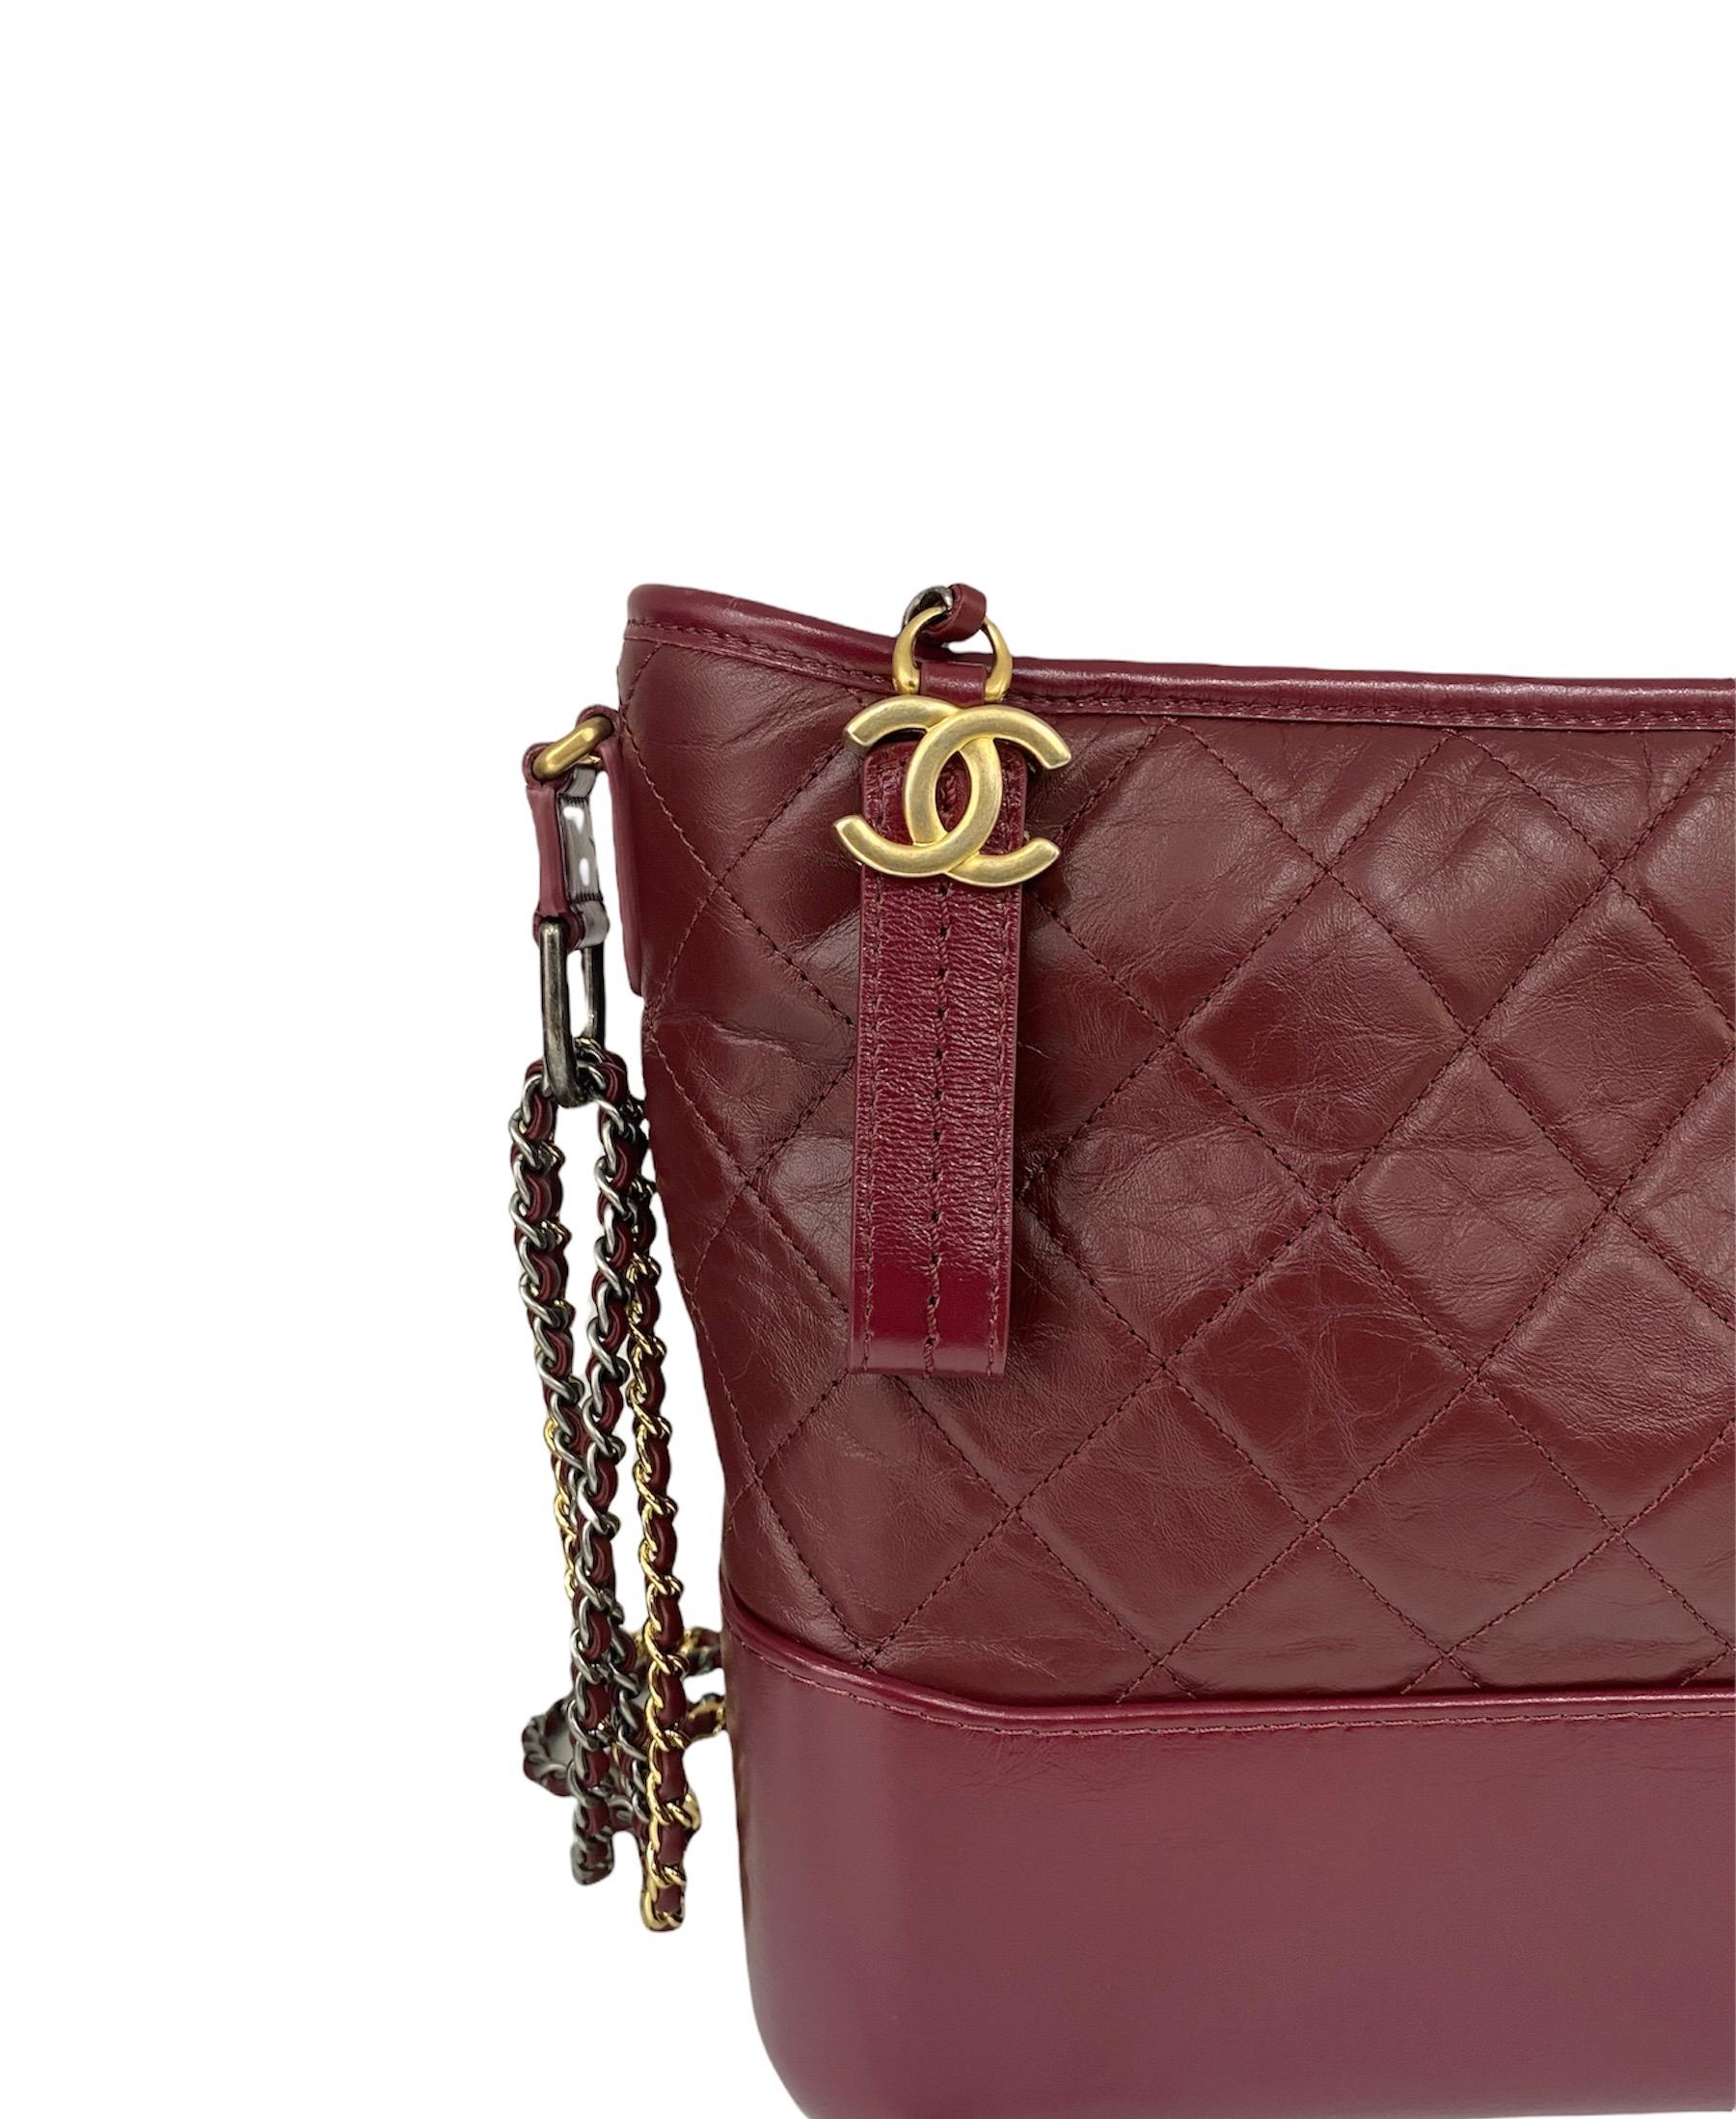 Fabelhafte Tasche von Chanel Modell Gabrielle aus bordeauxfarbenem Leder mit silbernen und goldenen Beschlägen. Die Tasche ist mit einem Reißverschluss ausgestattet, mit einem geräumigen Innenraum und mit Taschen ausgestattet. Der verschiebbare